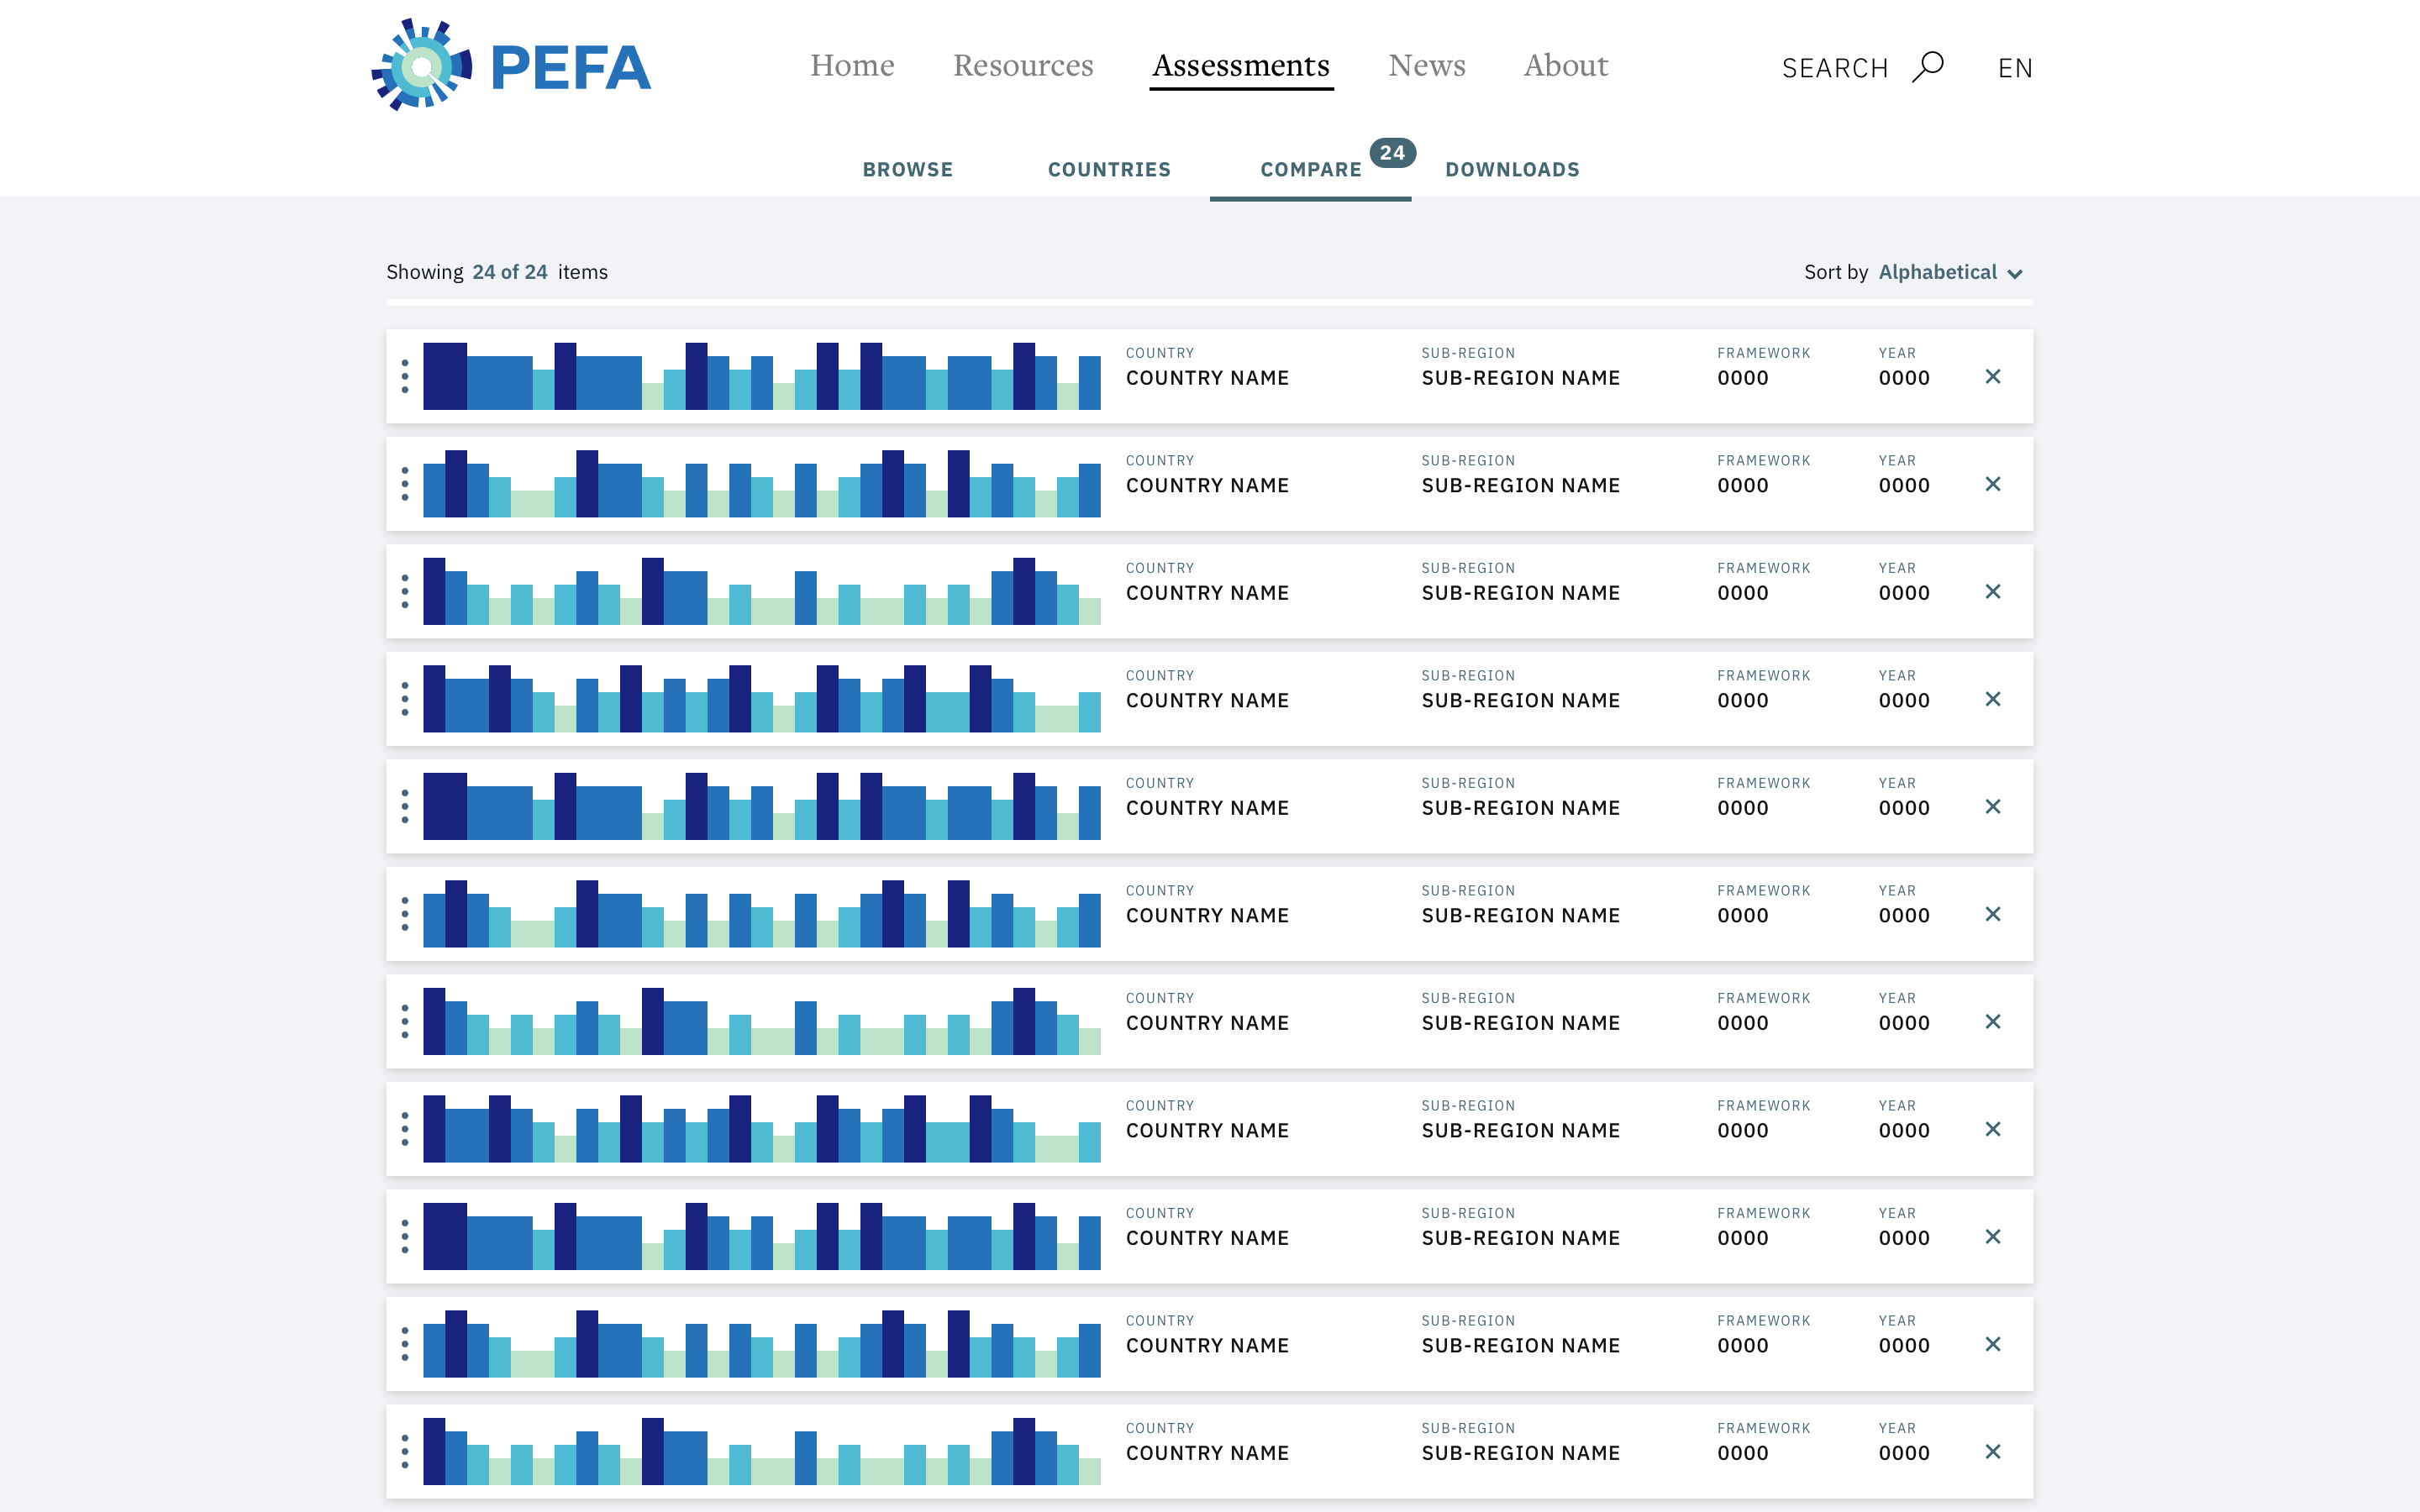 PEFA Website: Assessments 3, Comparison View